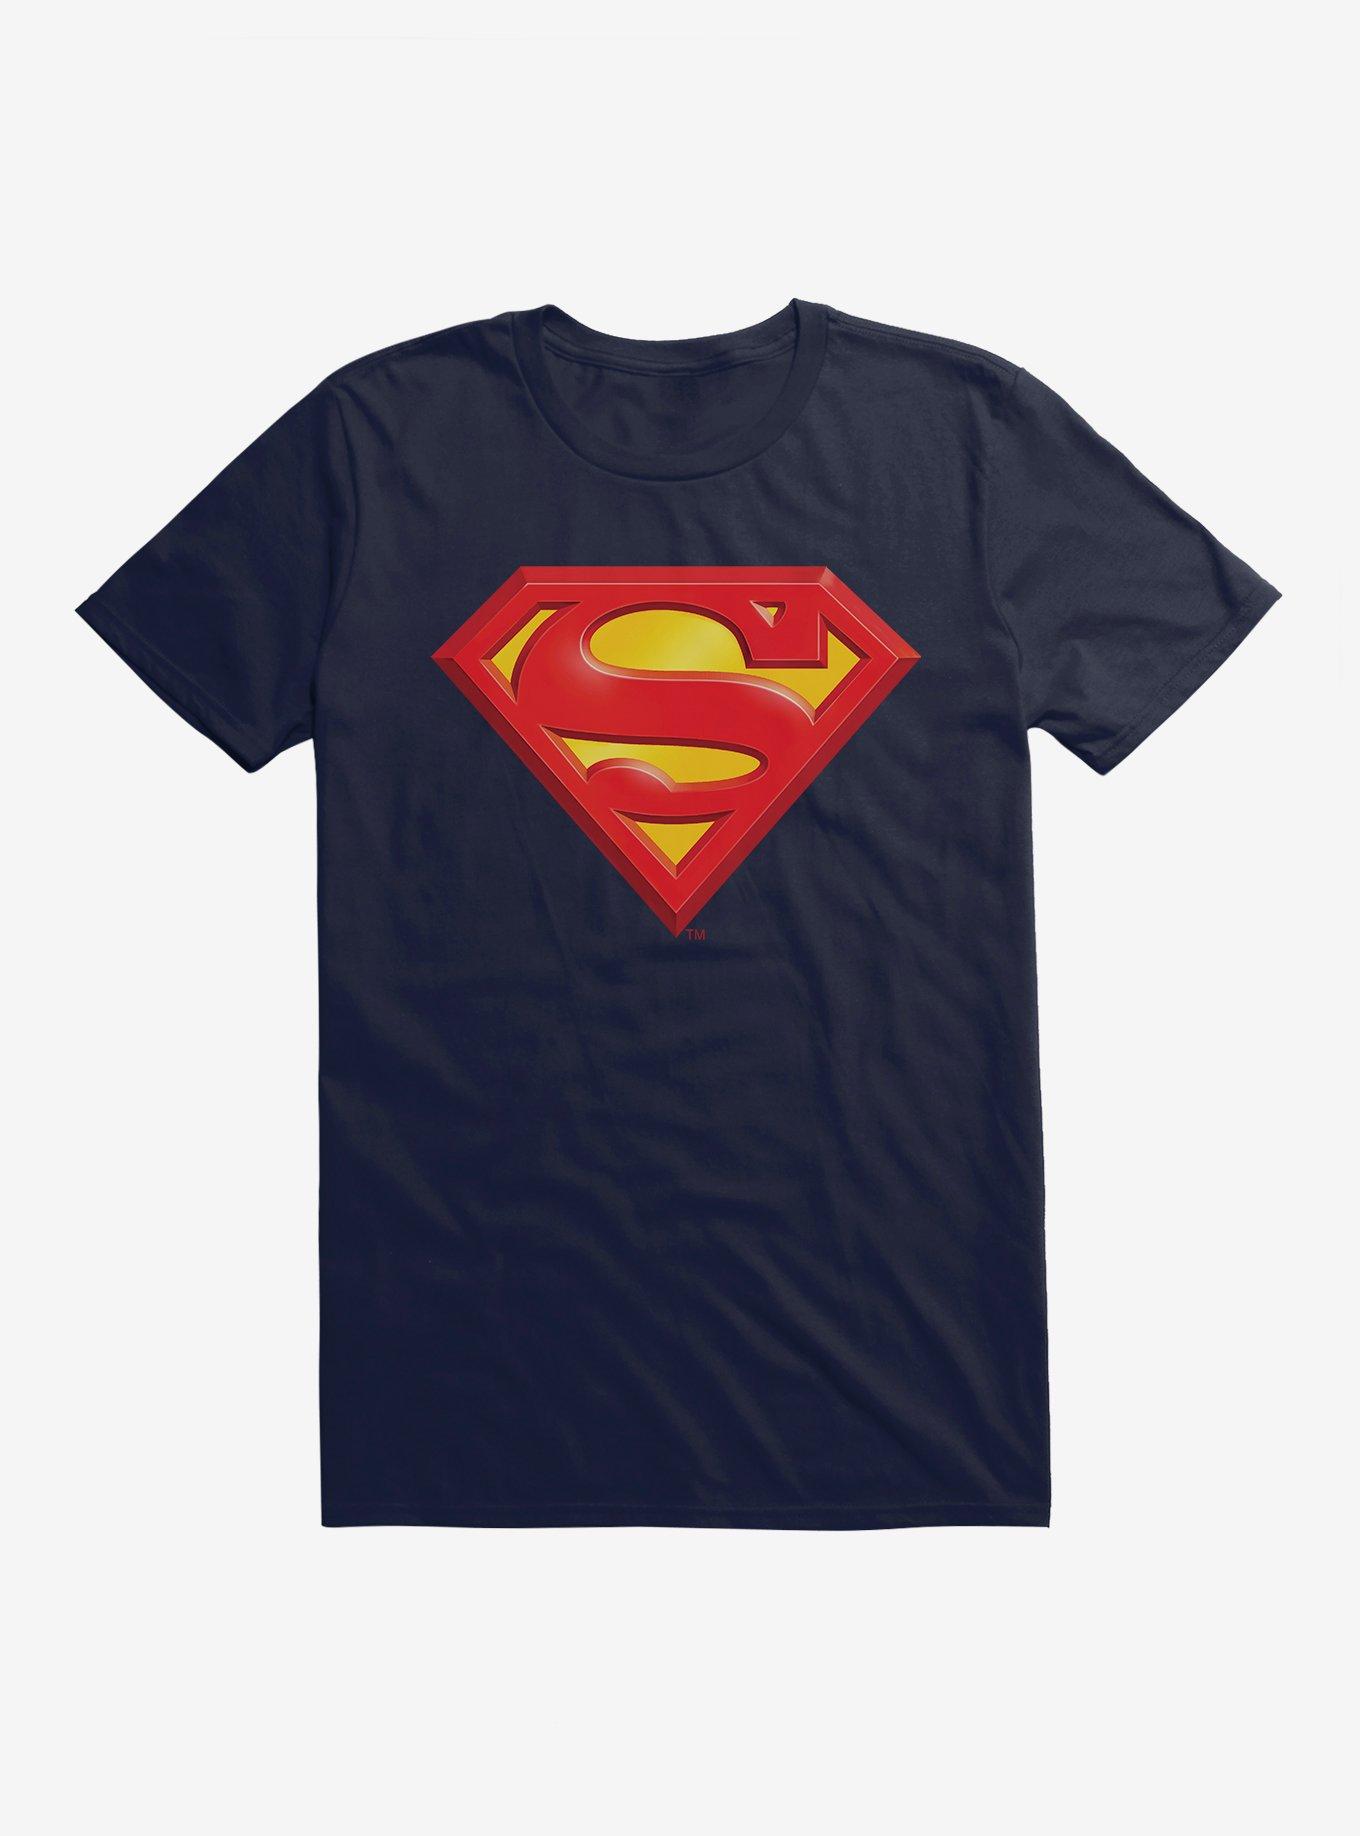 DC Comics, Shirts & Tops, Superman Jersey